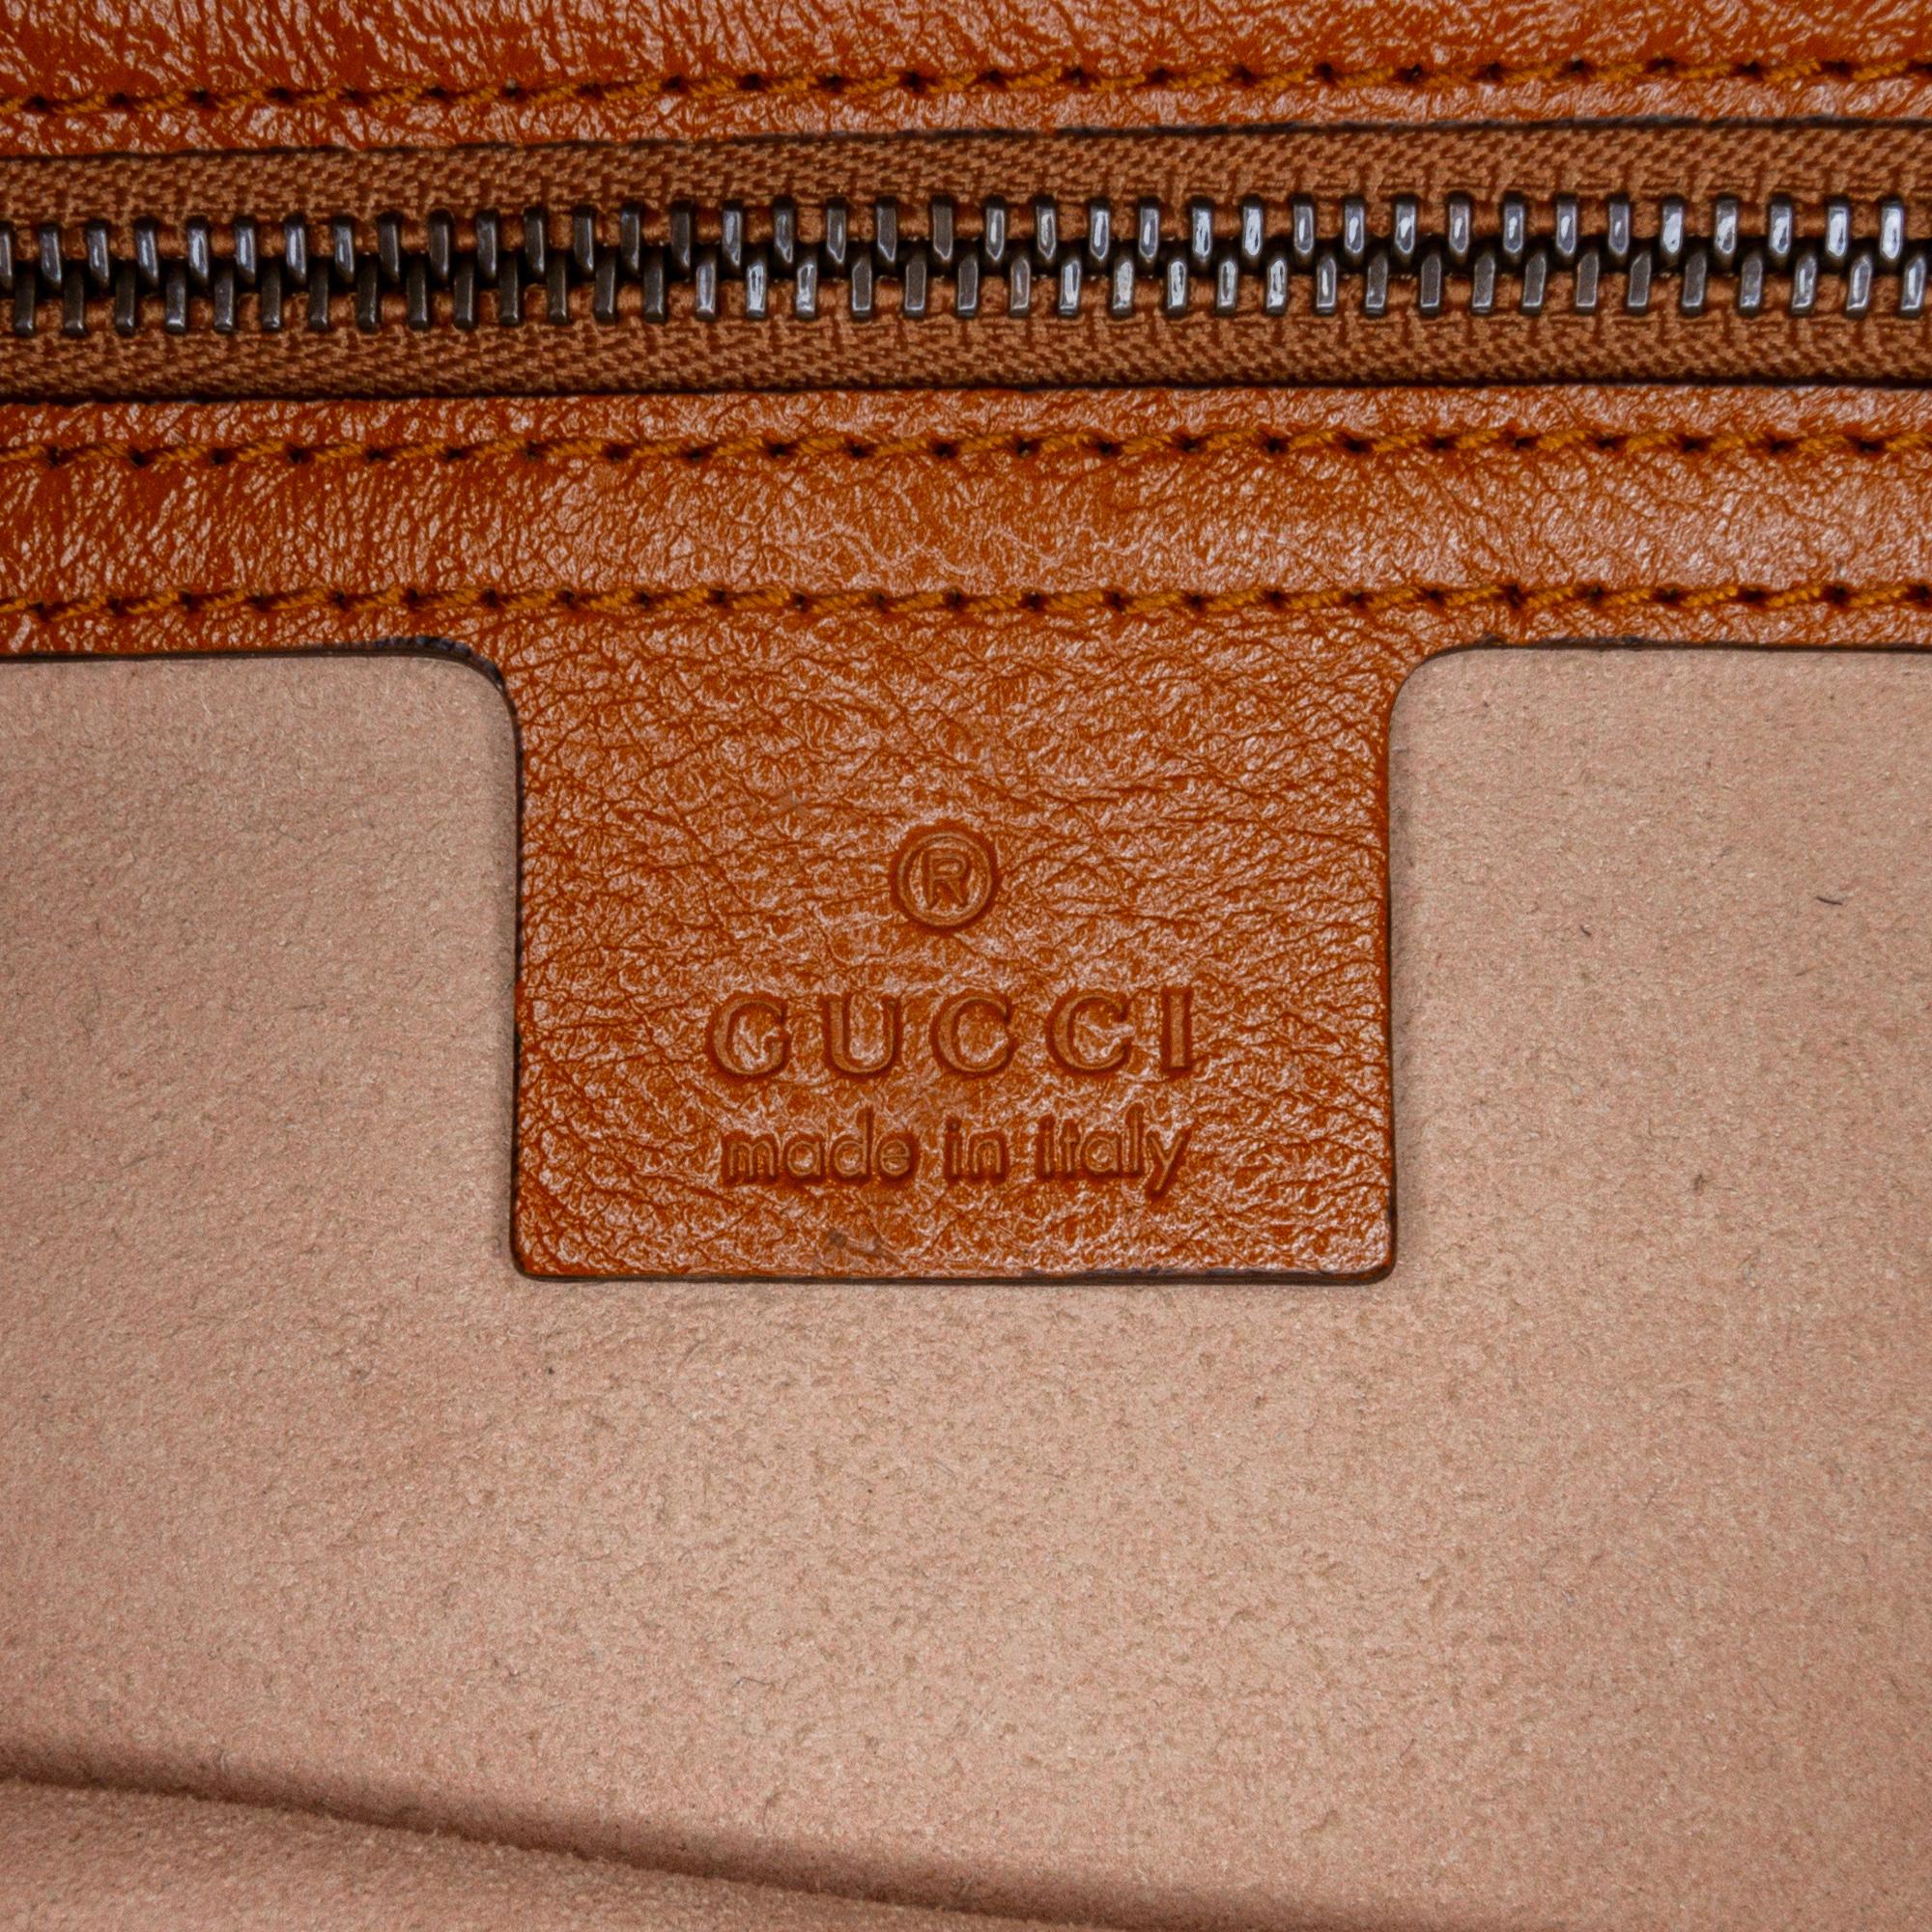 Gucci GG Marmont Tote Bag